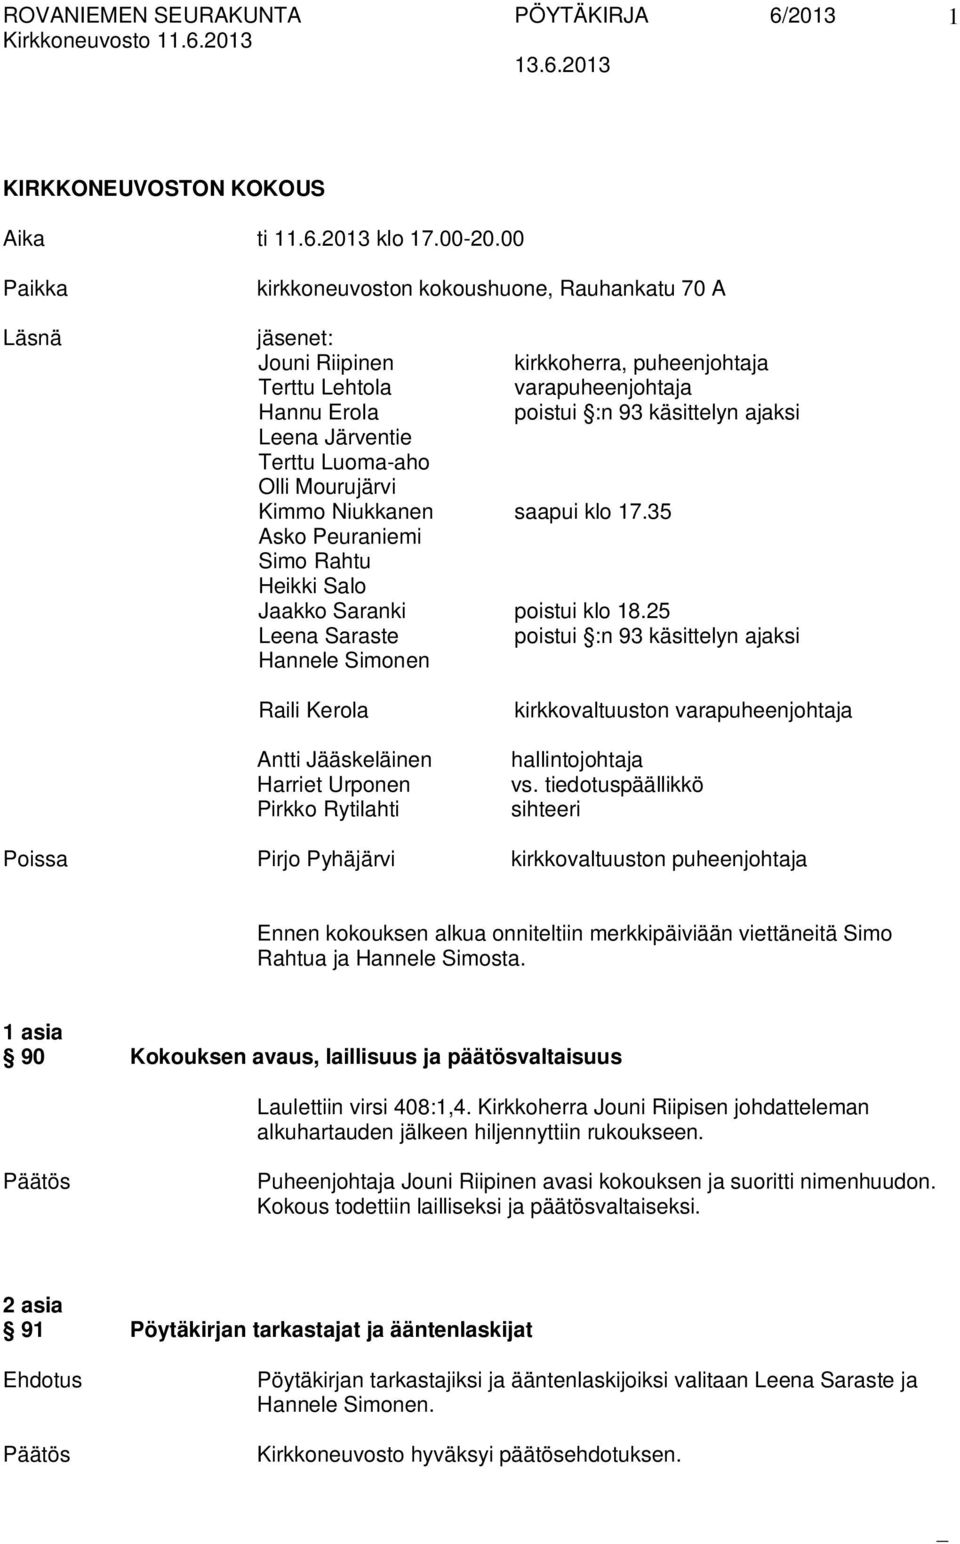 Järventie Terttu Luoma-aho Olli Mourujärvi Kimmo Niukkanen saapui klo 17.35 Asko Peuraniemi Simo Rahtu Heikki Salo Jaakko Saranki poistui klo 18.